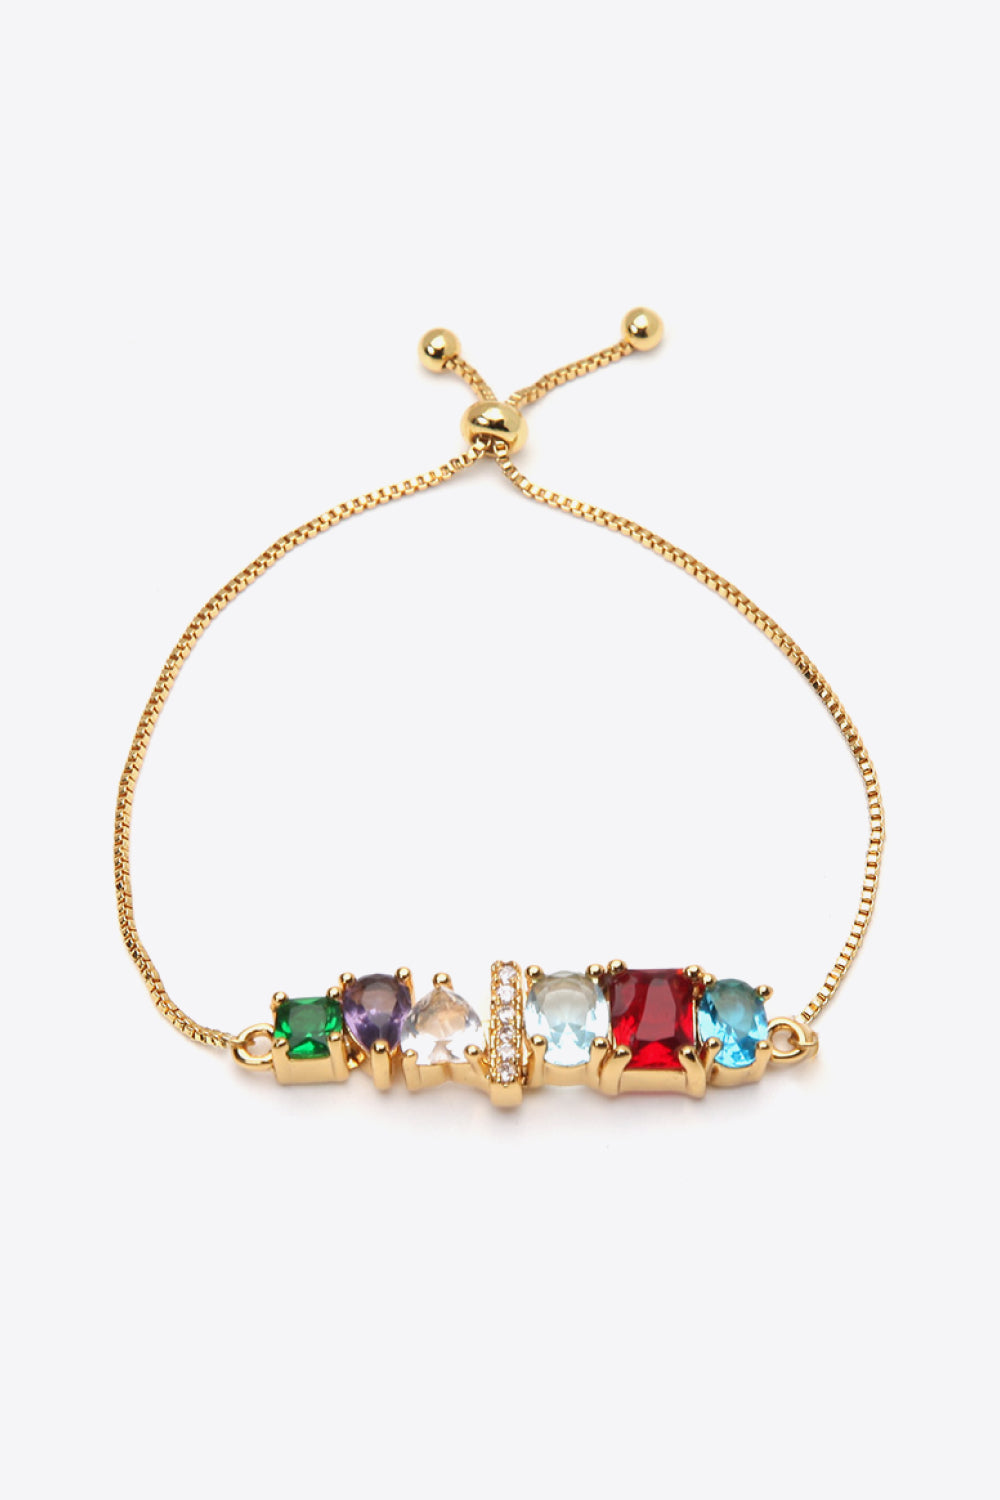 A to J Zircon Bracelet - I / One Size - Women’s Jewelry - Bracelets - 25 - 2024